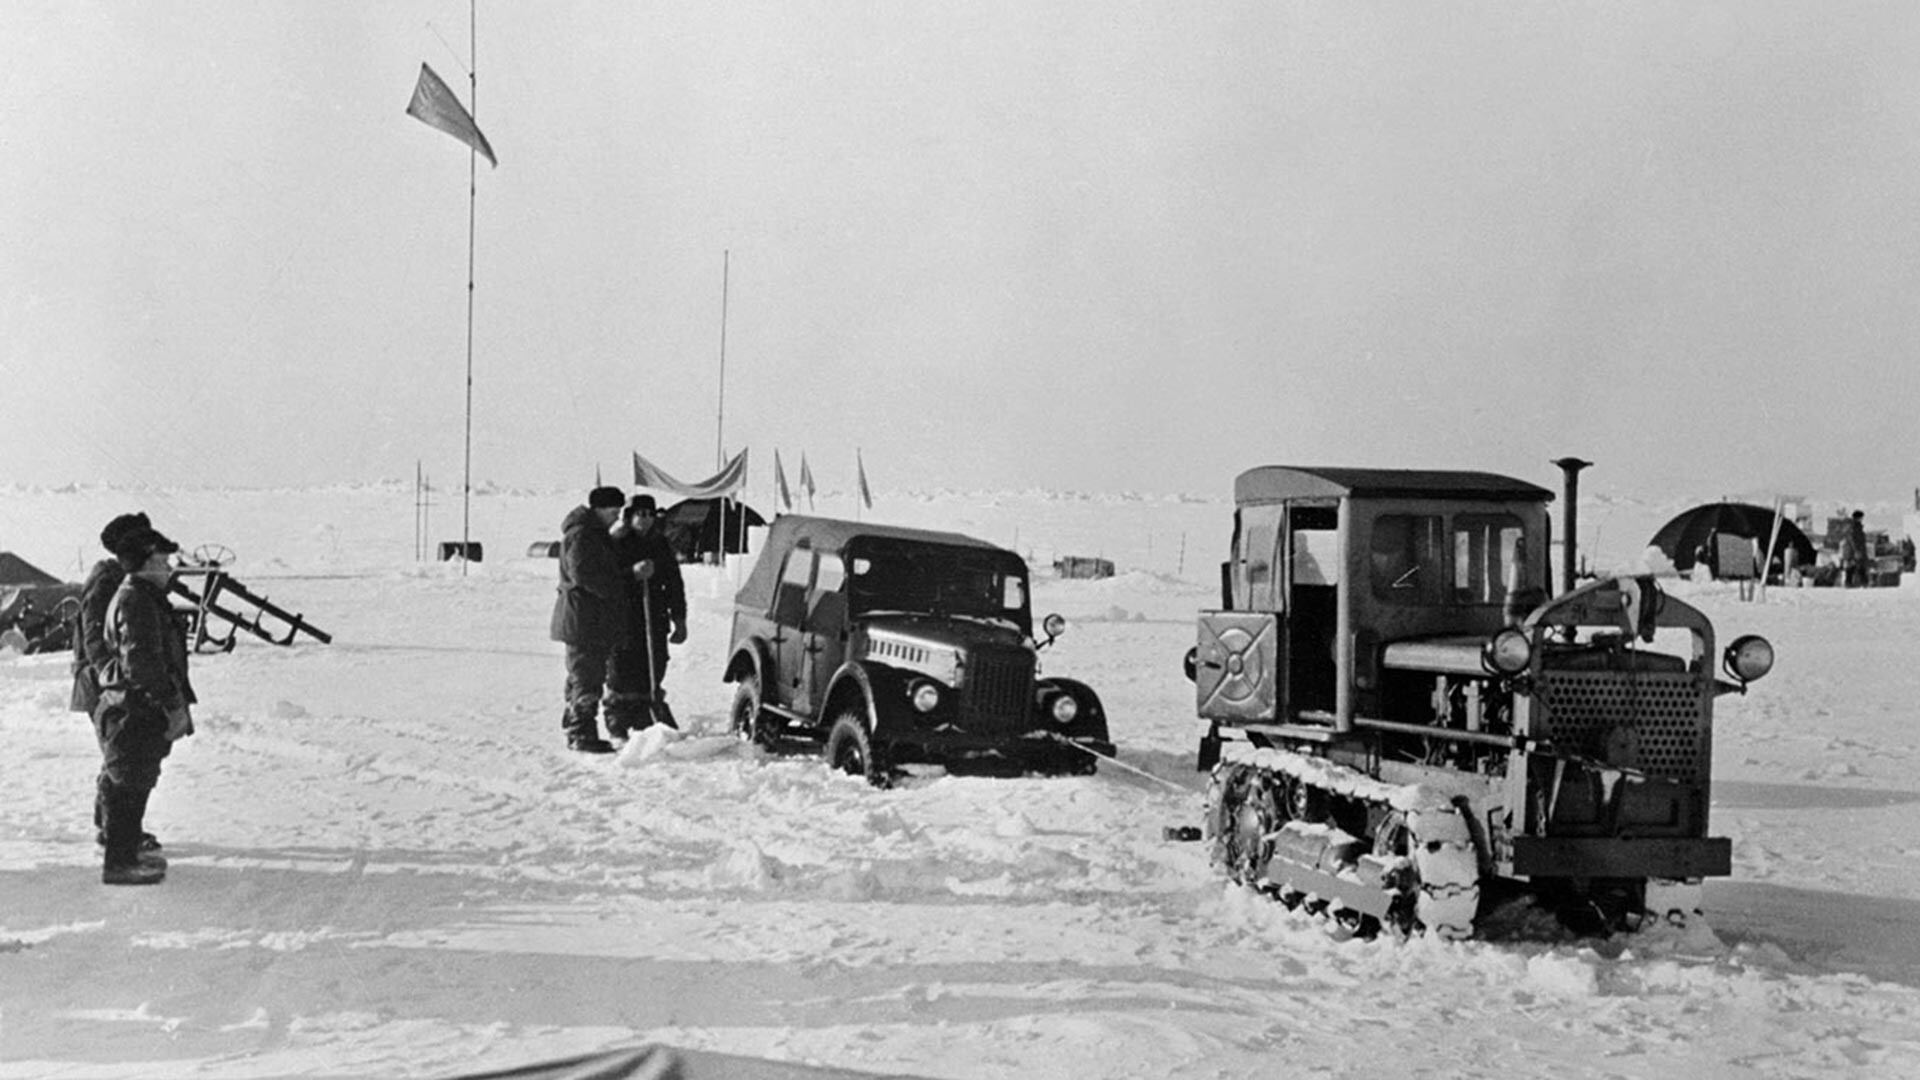 Traktor reši pokvarjen avtomobil na eni od opazovalnih postaj, ki so jih znanstveniki Sovjetske zveze postavili na vrhu ledene ploskve na Arktiki. 